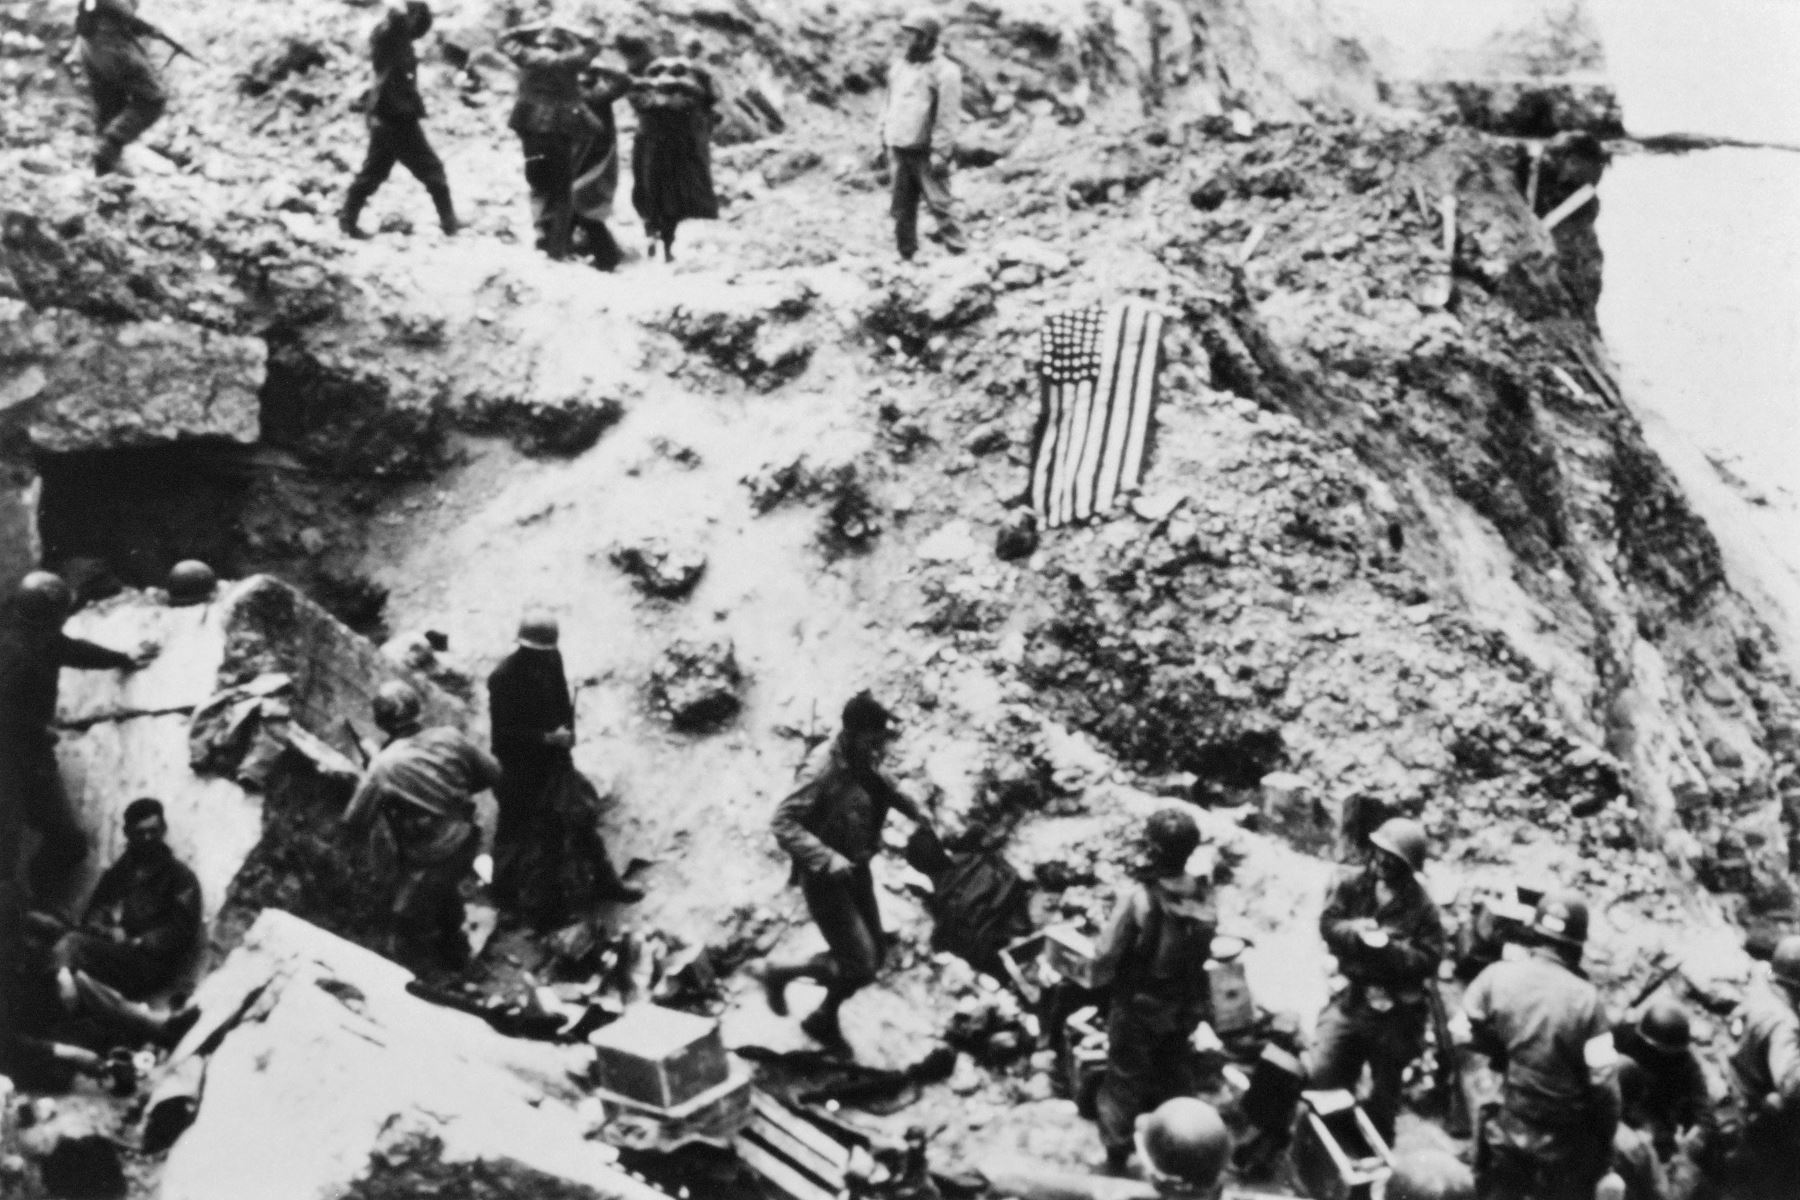 Los soldados estadounidenses del 2º batallón de guardabosques rodean a prisioneros alemanes el 6 de junio de 1944 en la Pointe du Hoc ubicada en un acantilado que domina la playa de Omaha después de que las fuerzas aliadas asaltaron las playas de Normandía durante el Día D. Elementos del 2º Batallón de Guardabosques escalaron el acantilado de 100 pies y se apoderaron de las piezas de artillería alemana que podrían haber disparado contra las fuerzas aliadas que desembarcaron en la playa de Omaha. El día D, 6